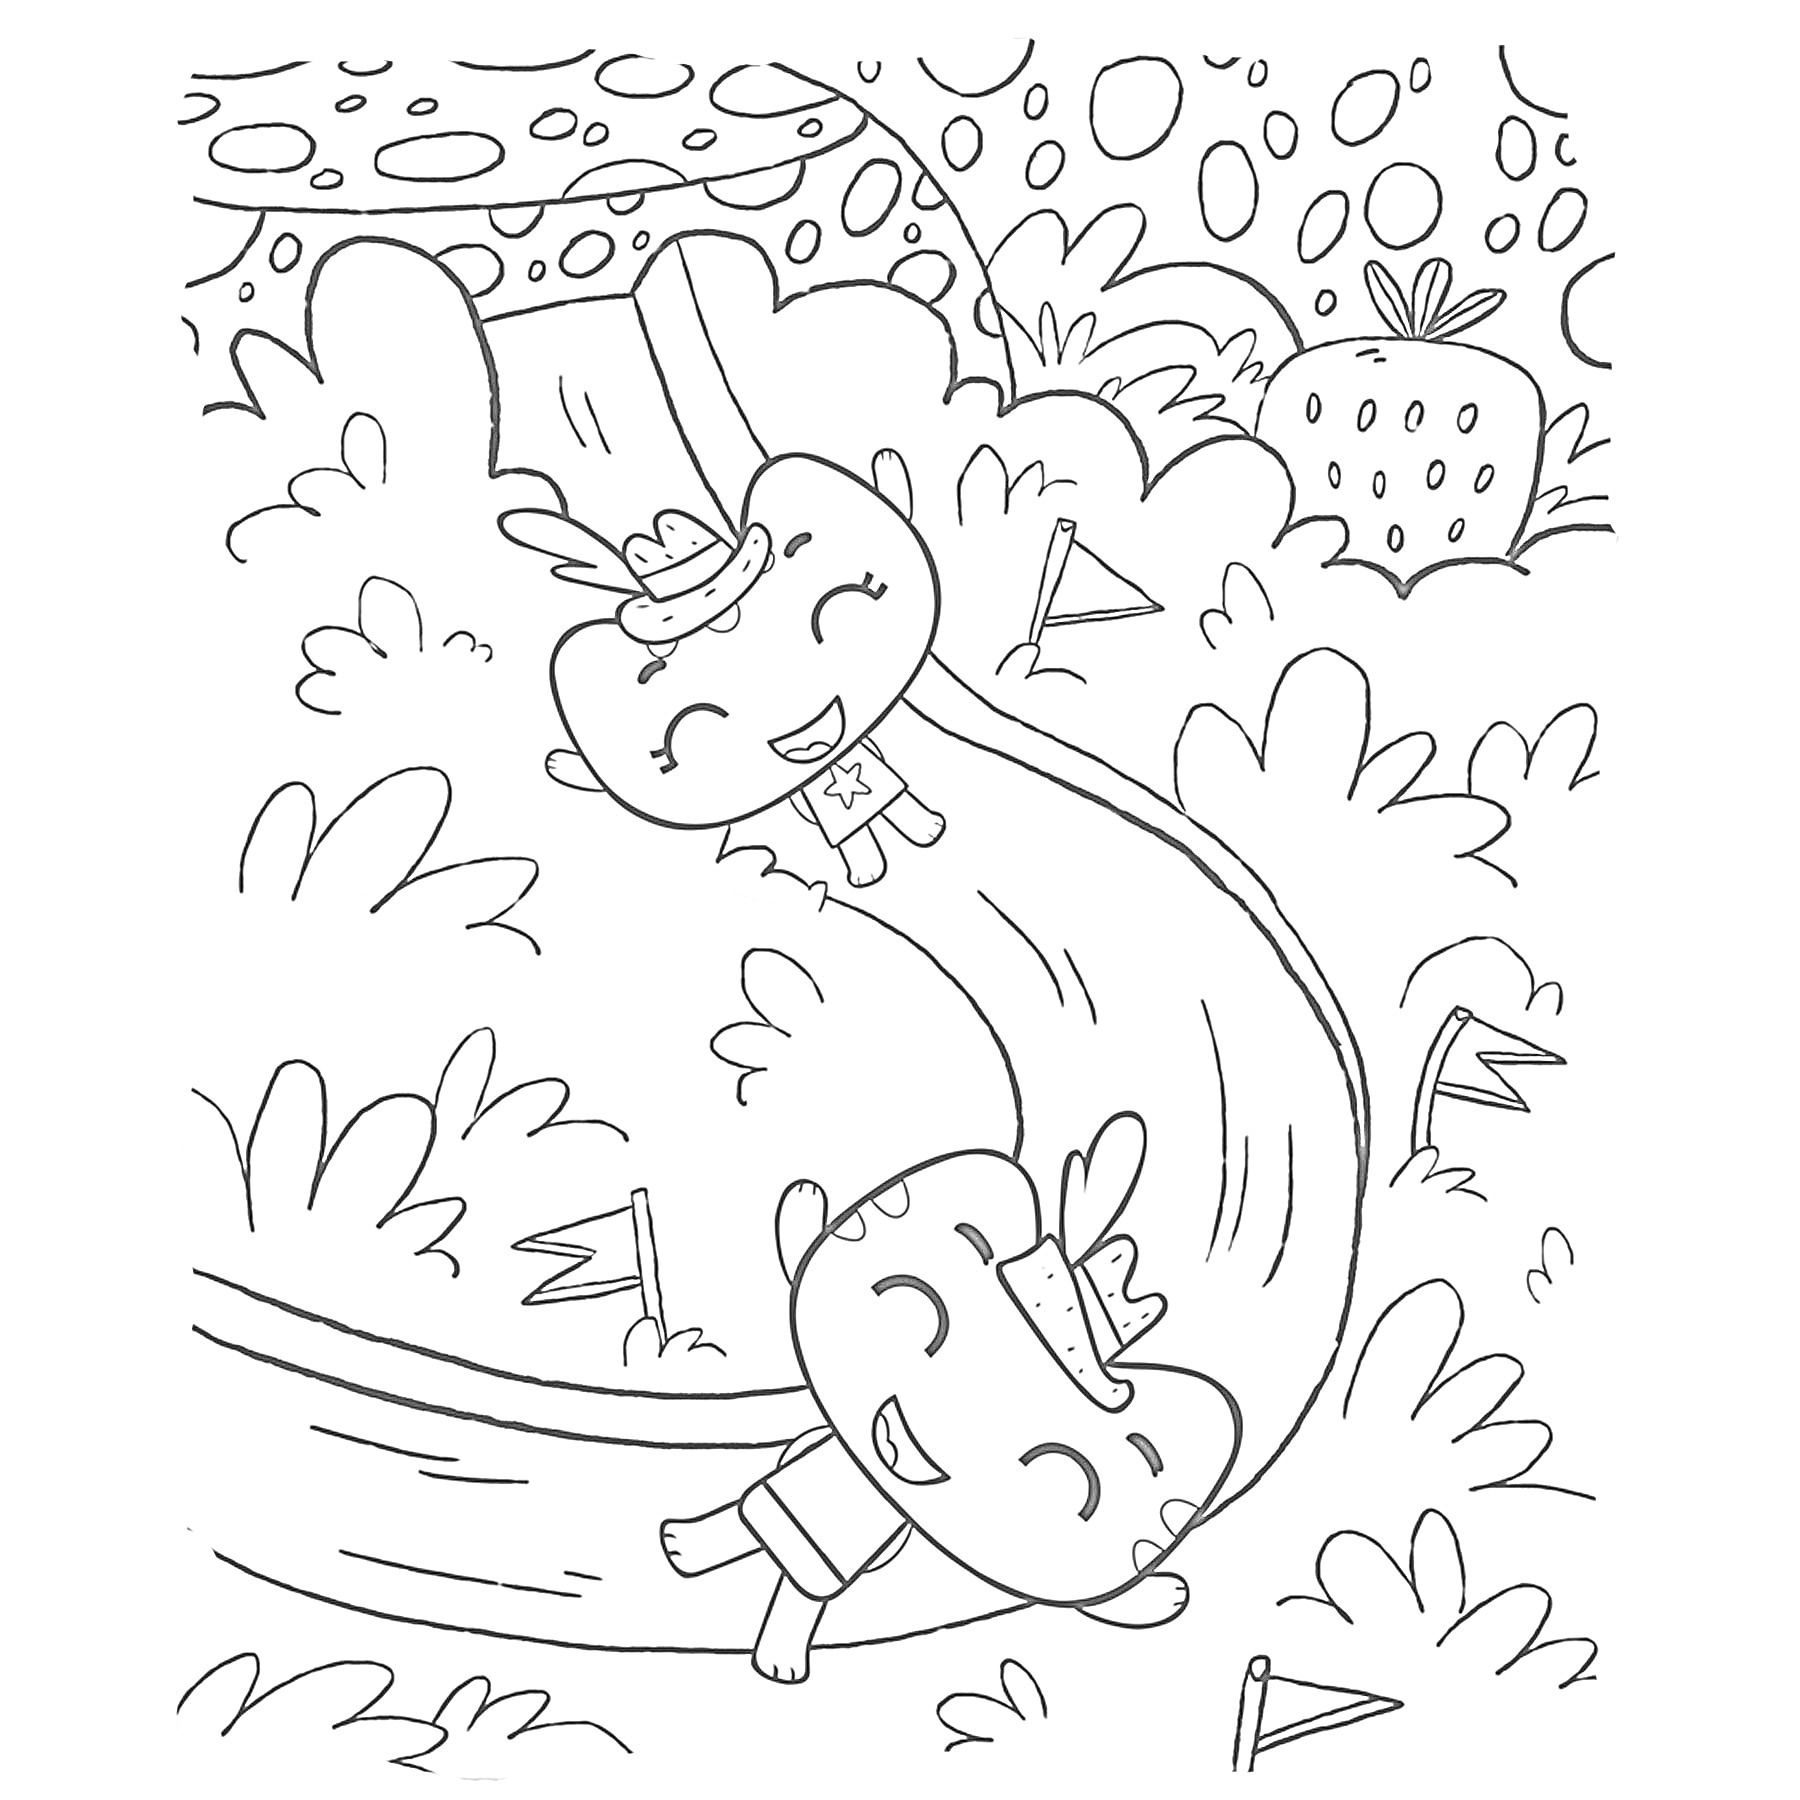 Раскраска Два весёлых котика катаются с горки в лесу, окружённые кустами и флажками; на заднем плане большая клубника и причудливое небо